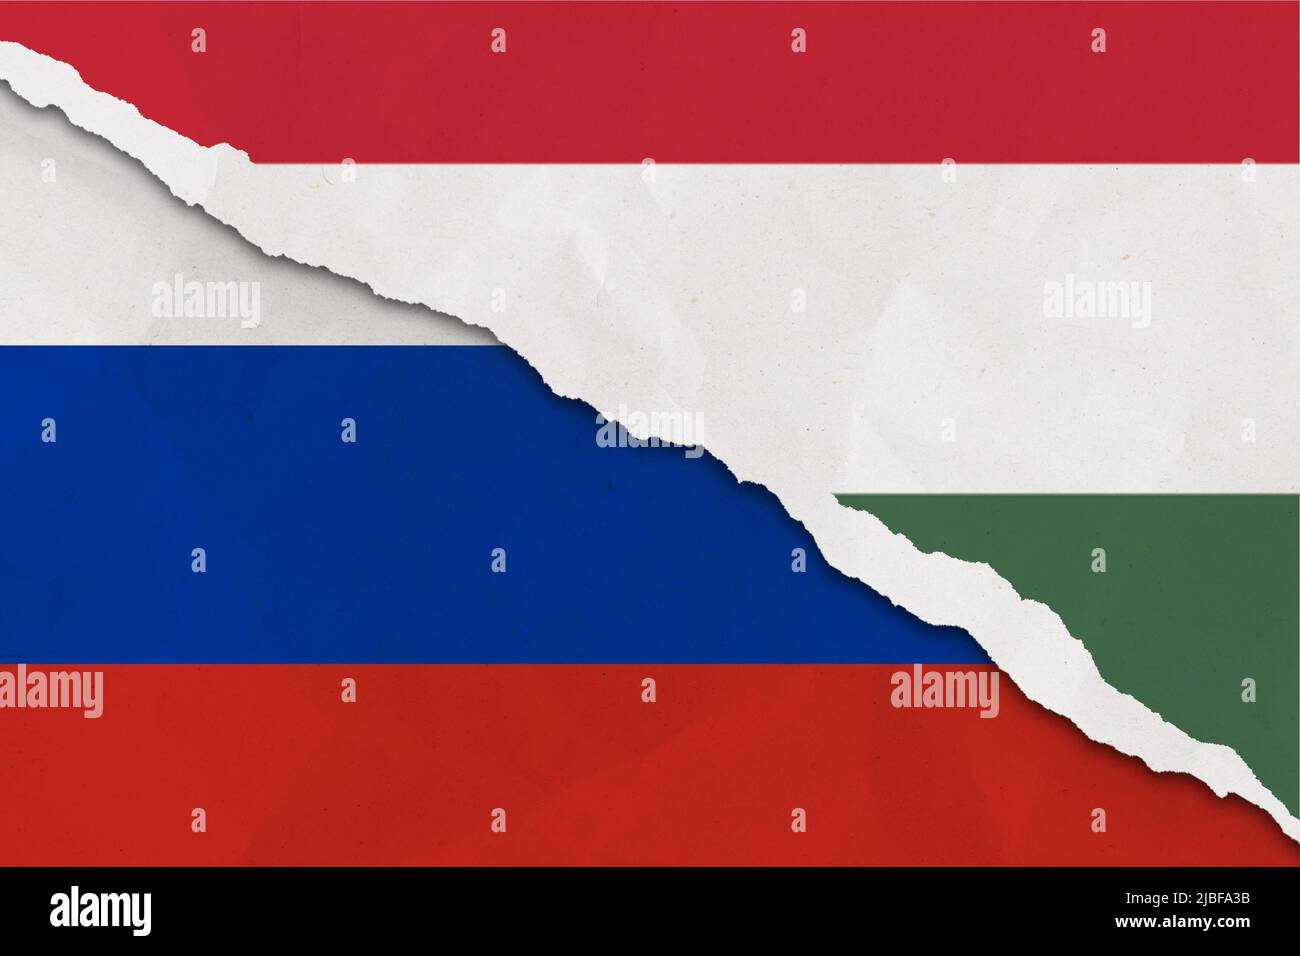 Le drapeau de la Russie et de la Hongrie a déchiré le papier grince fond. Résumé la Russie et la Hongrie économie, les conflits politiques, la texture du concept de guerre contexte Banque D'Images